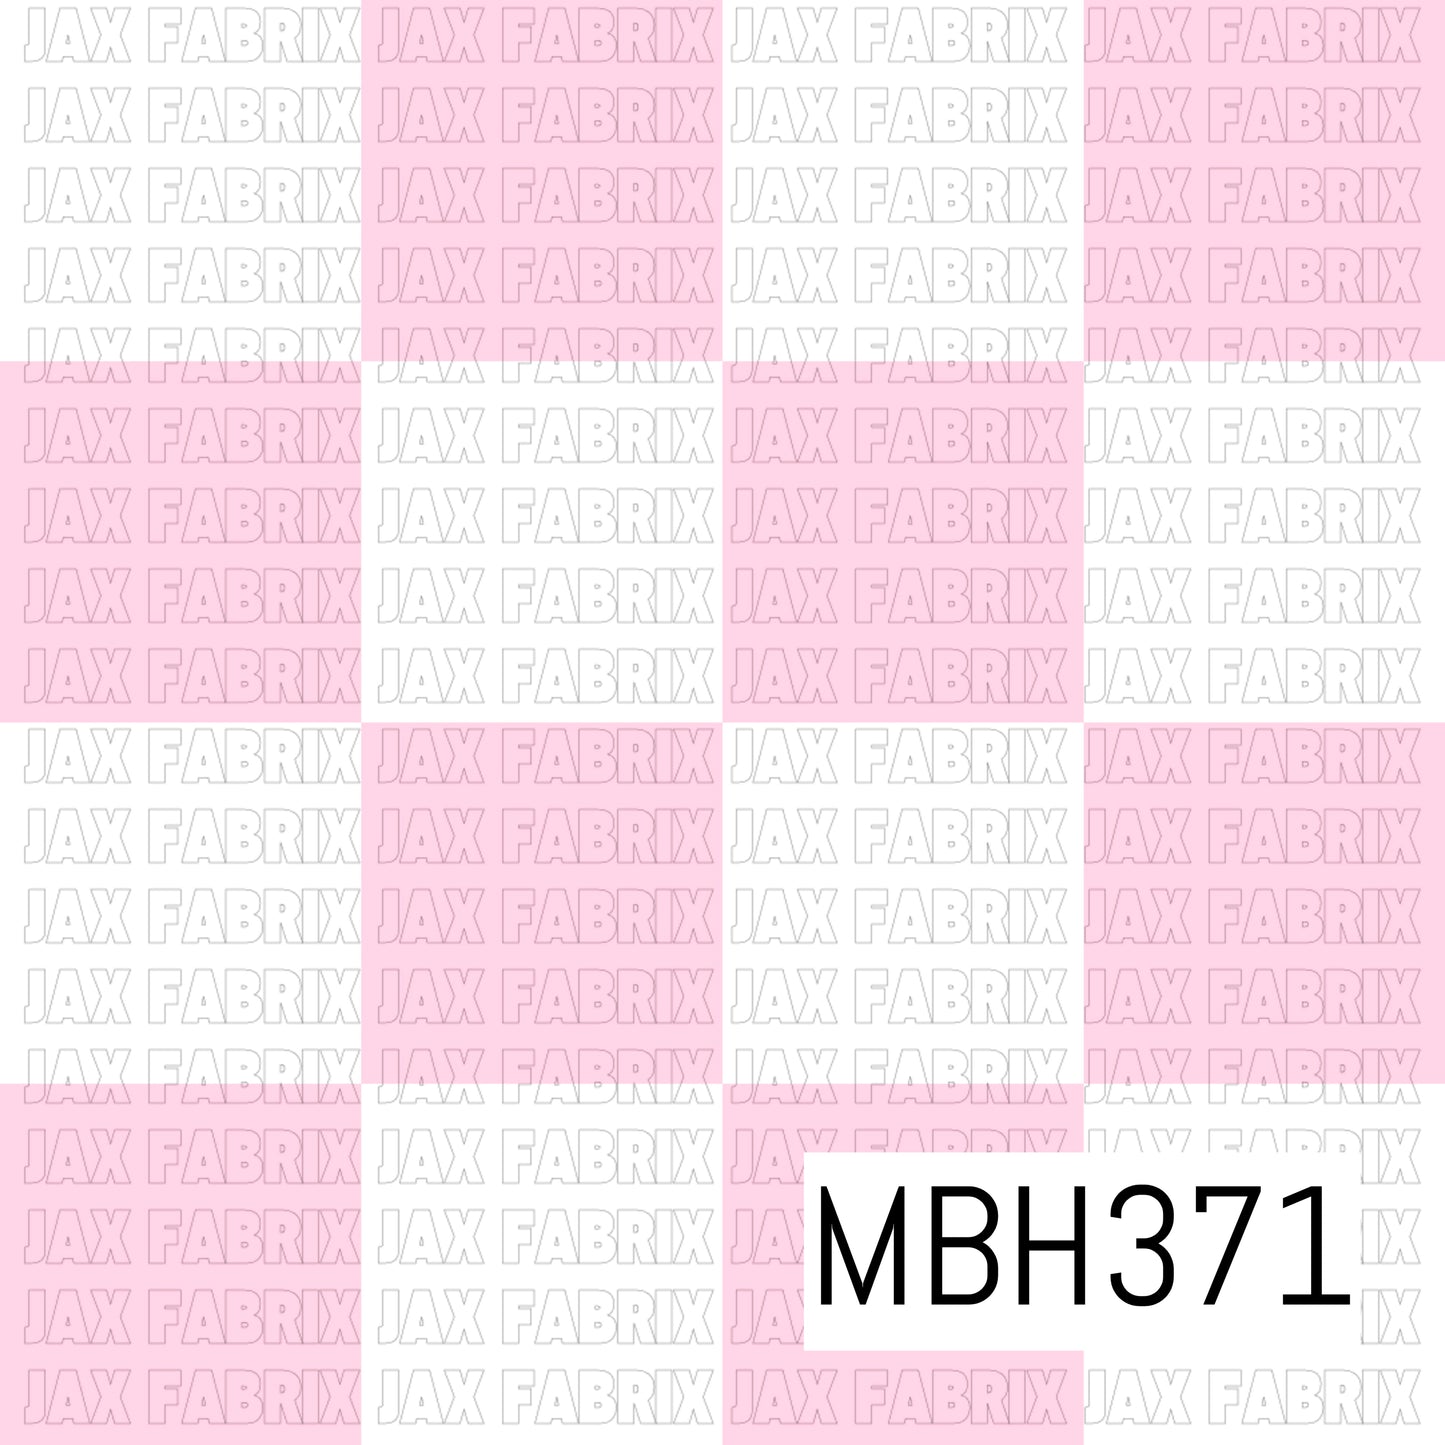 MBH371